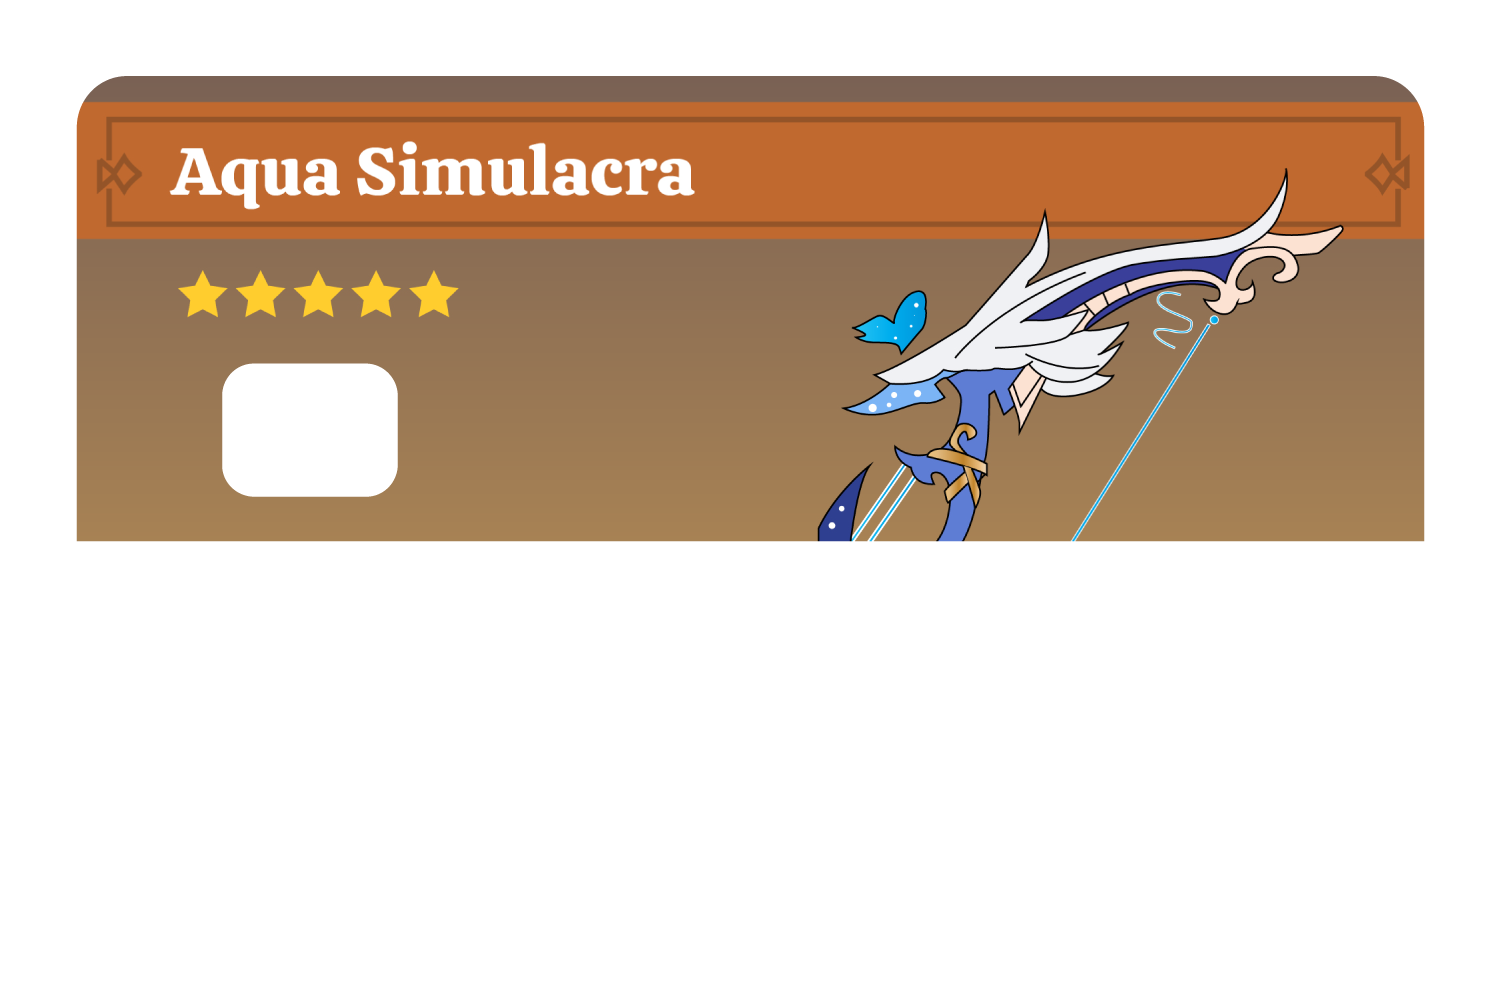 Aqua Simulacra